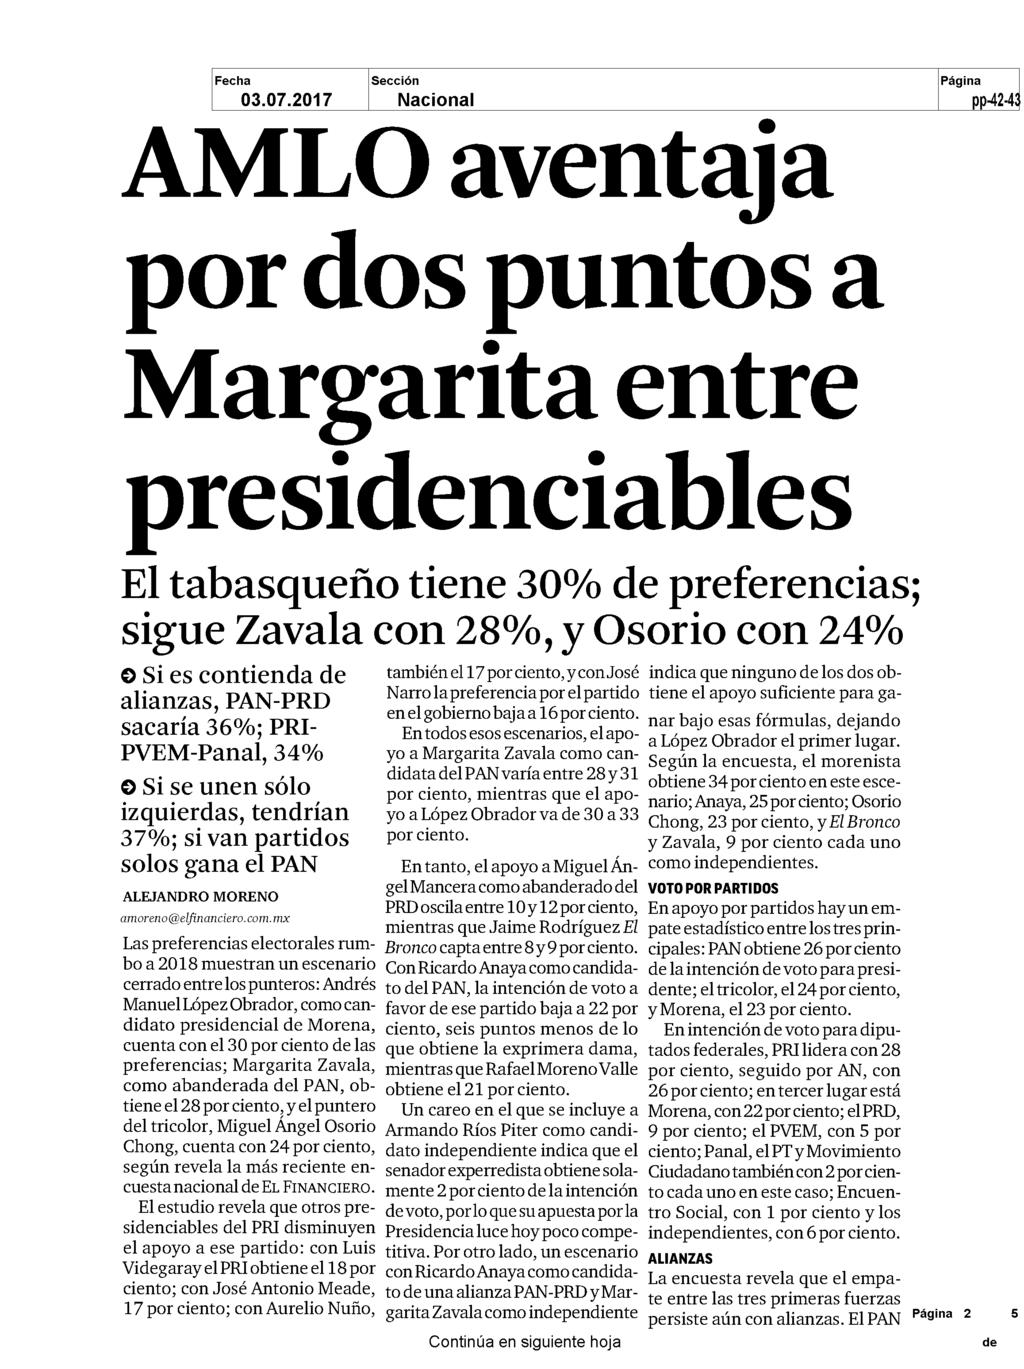 AMLO aventaja por dos puntos a Margarita entre presidenciables El tabasqueño tiene 30 de preferencias sigue Zavala con 28 y Osorio con 24 Si es contienda de alianzas PAN PRD sacaría 36 PRI PVEM Panal